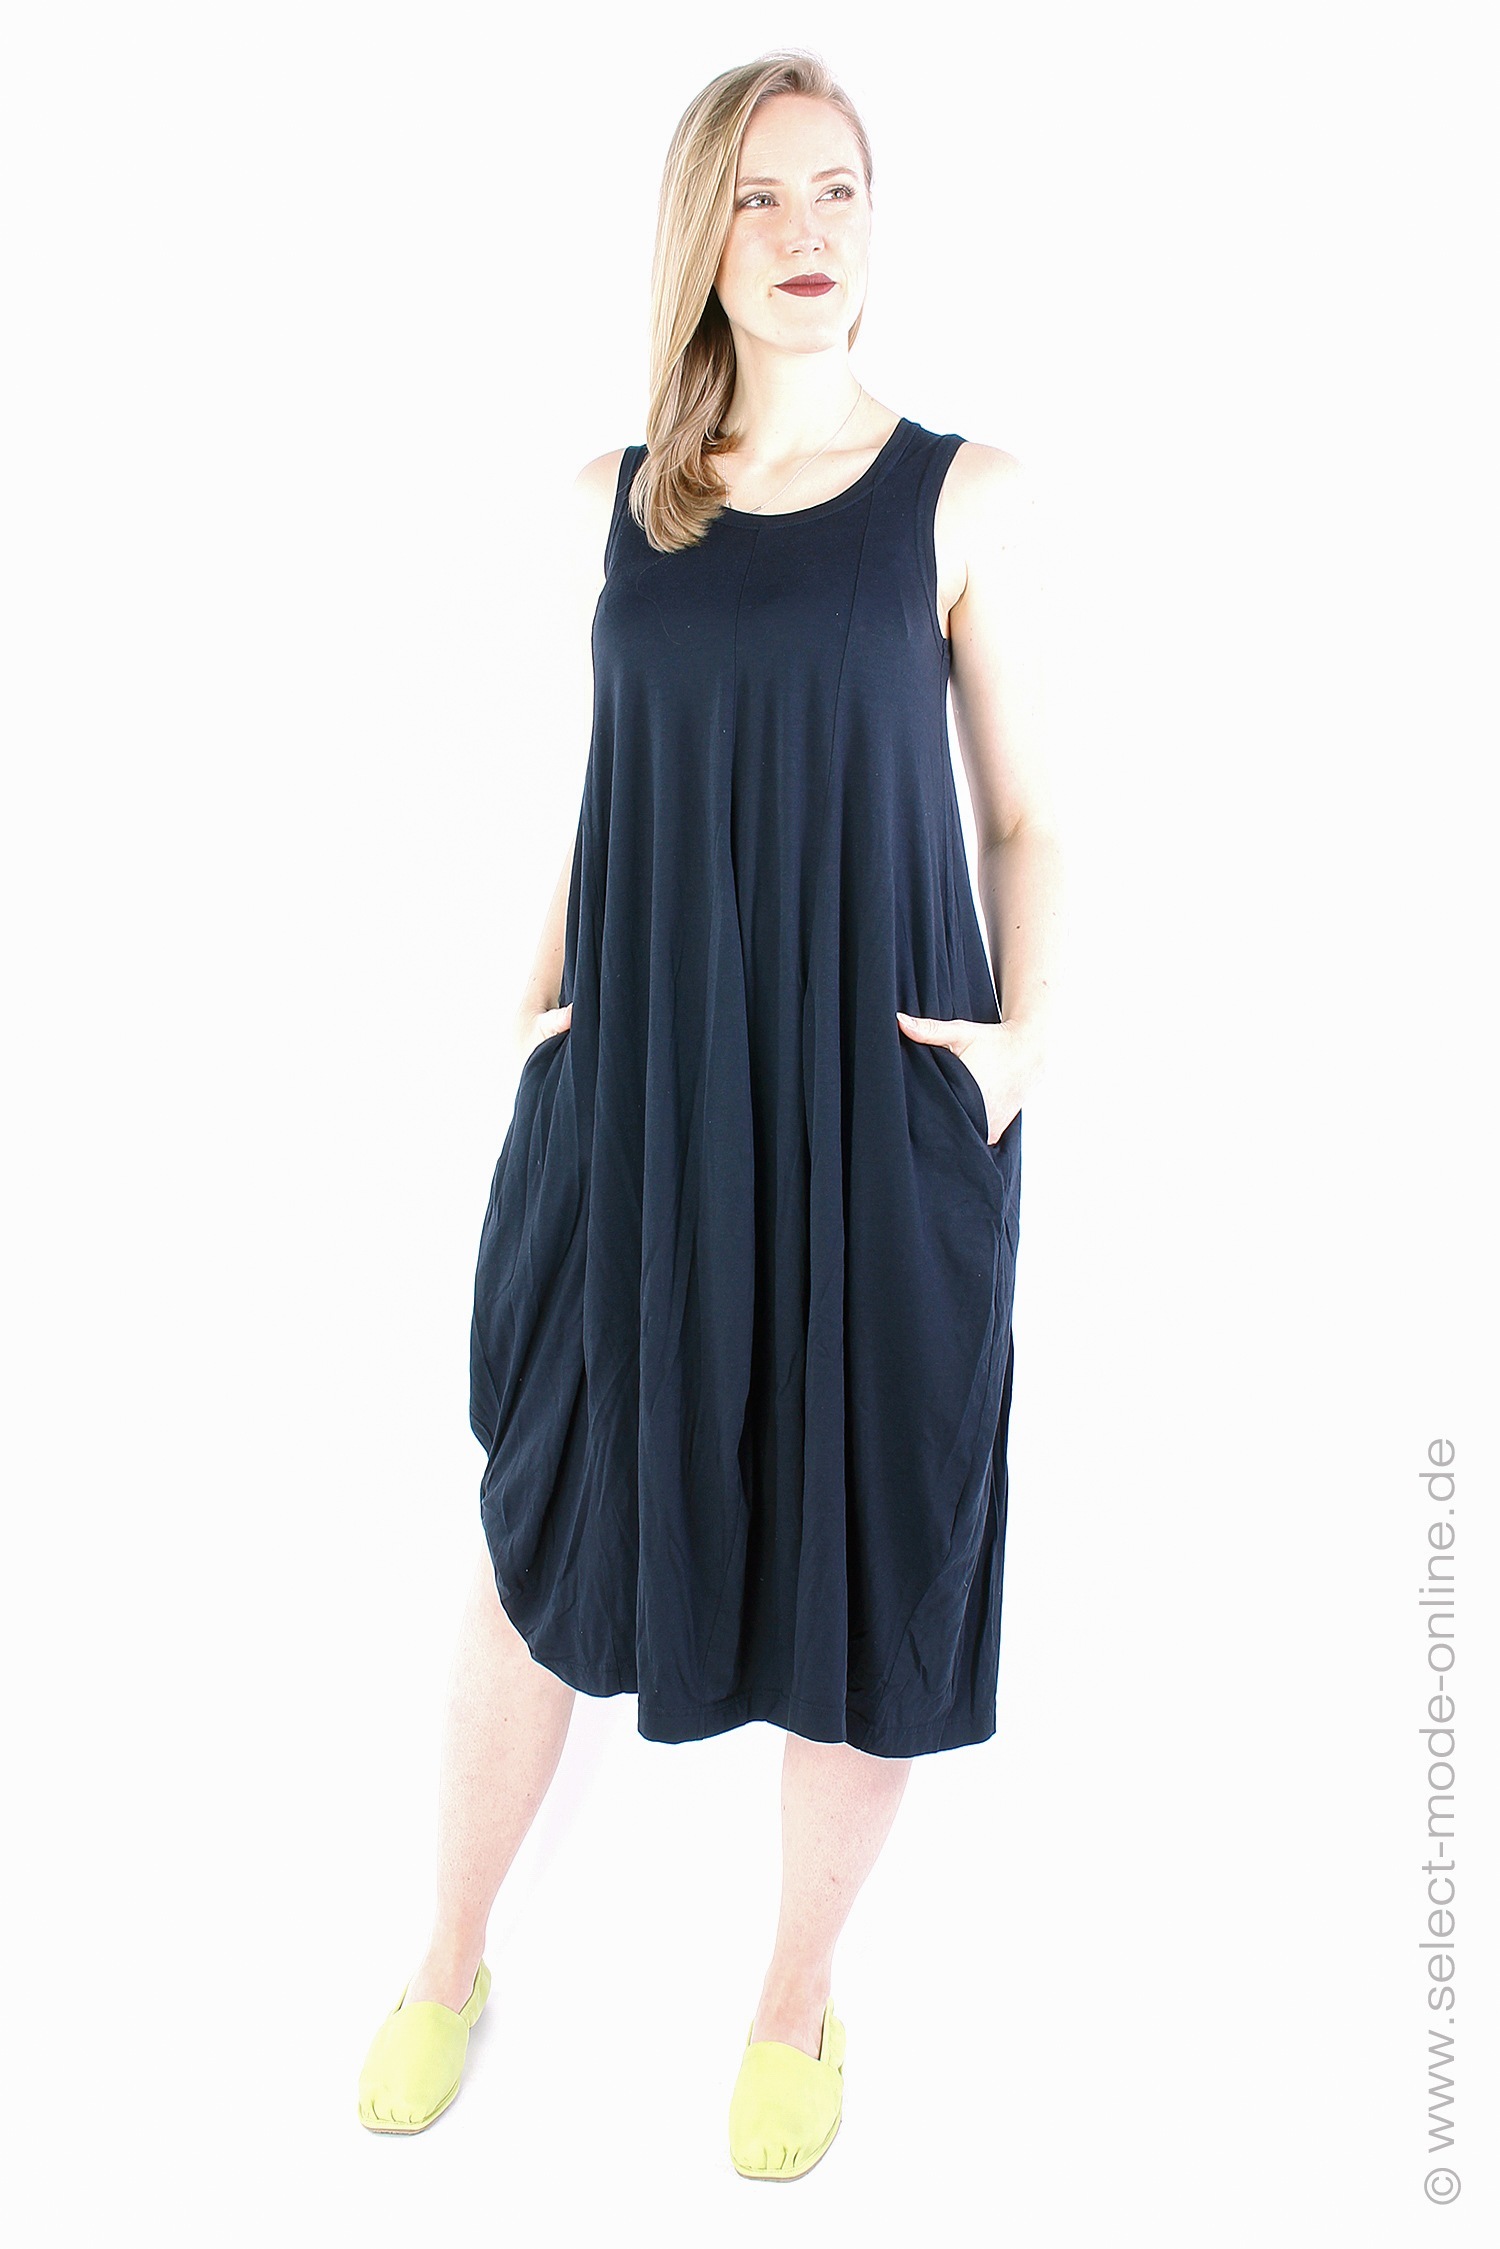 Tulpiges Kleid - schwarz - 1233260906